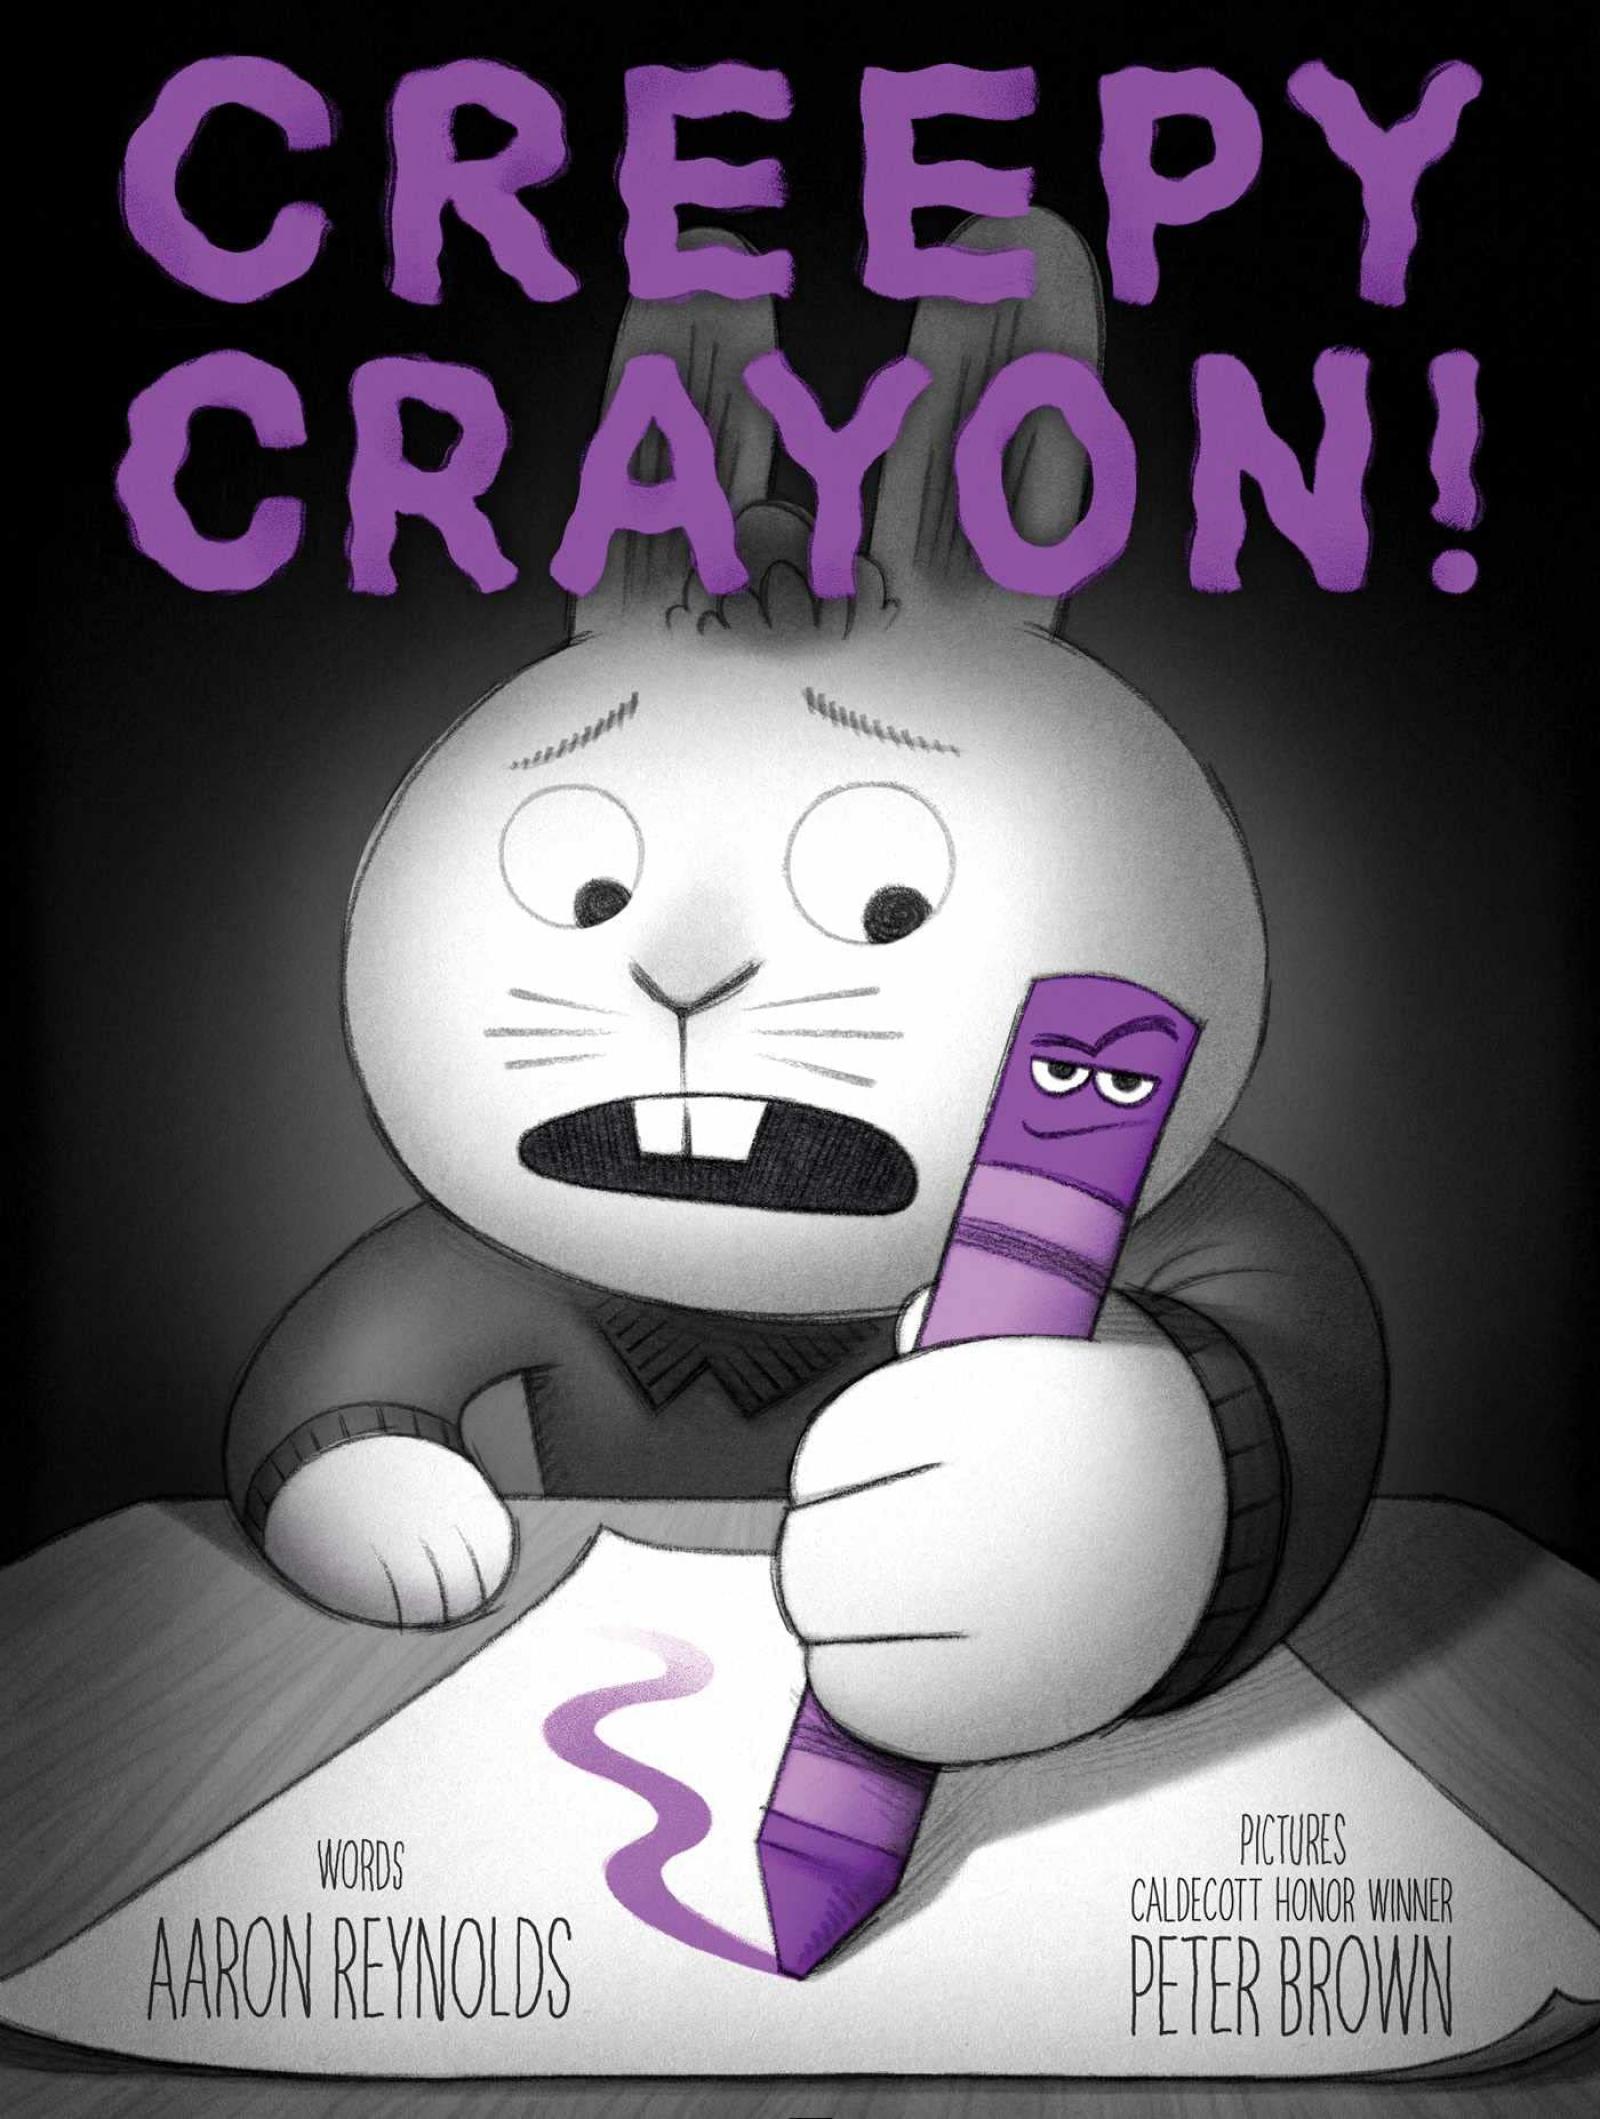 Creepy Crayon! by Aaron Reynolds & Peter Brown